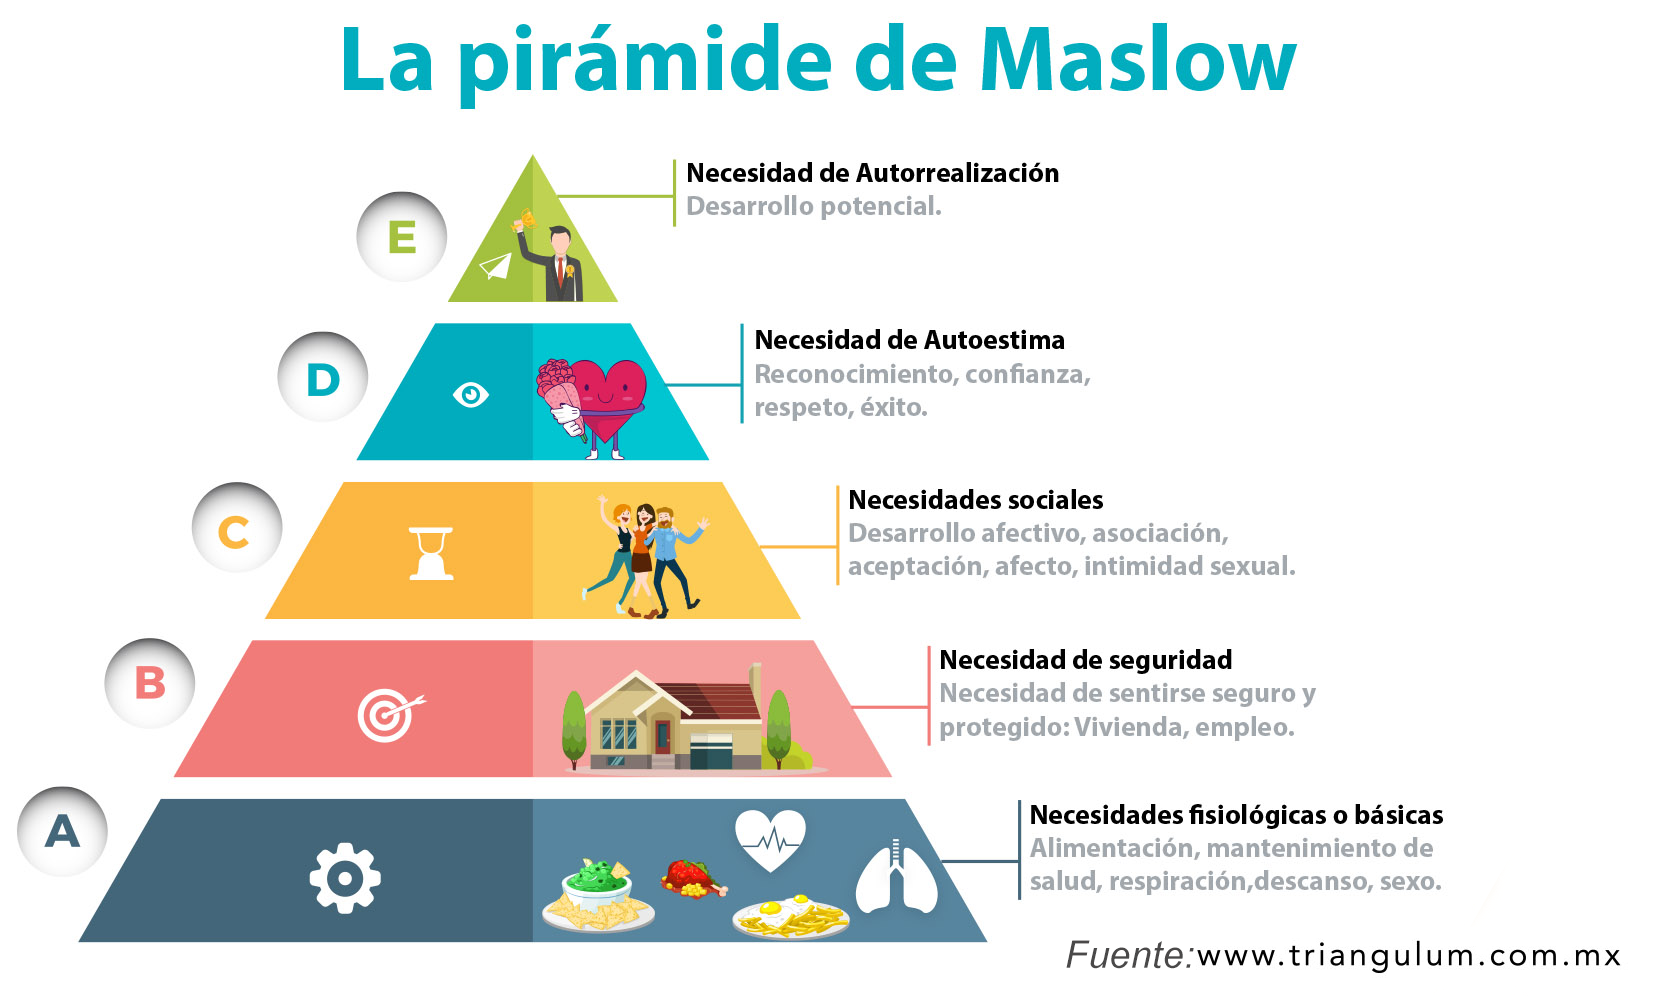 La Pirámide de Maslow. Necesidades fisiológicas, necesidad de seguridad, necesidades sociales, necesidades de autoestima, necesidad de autorrealización